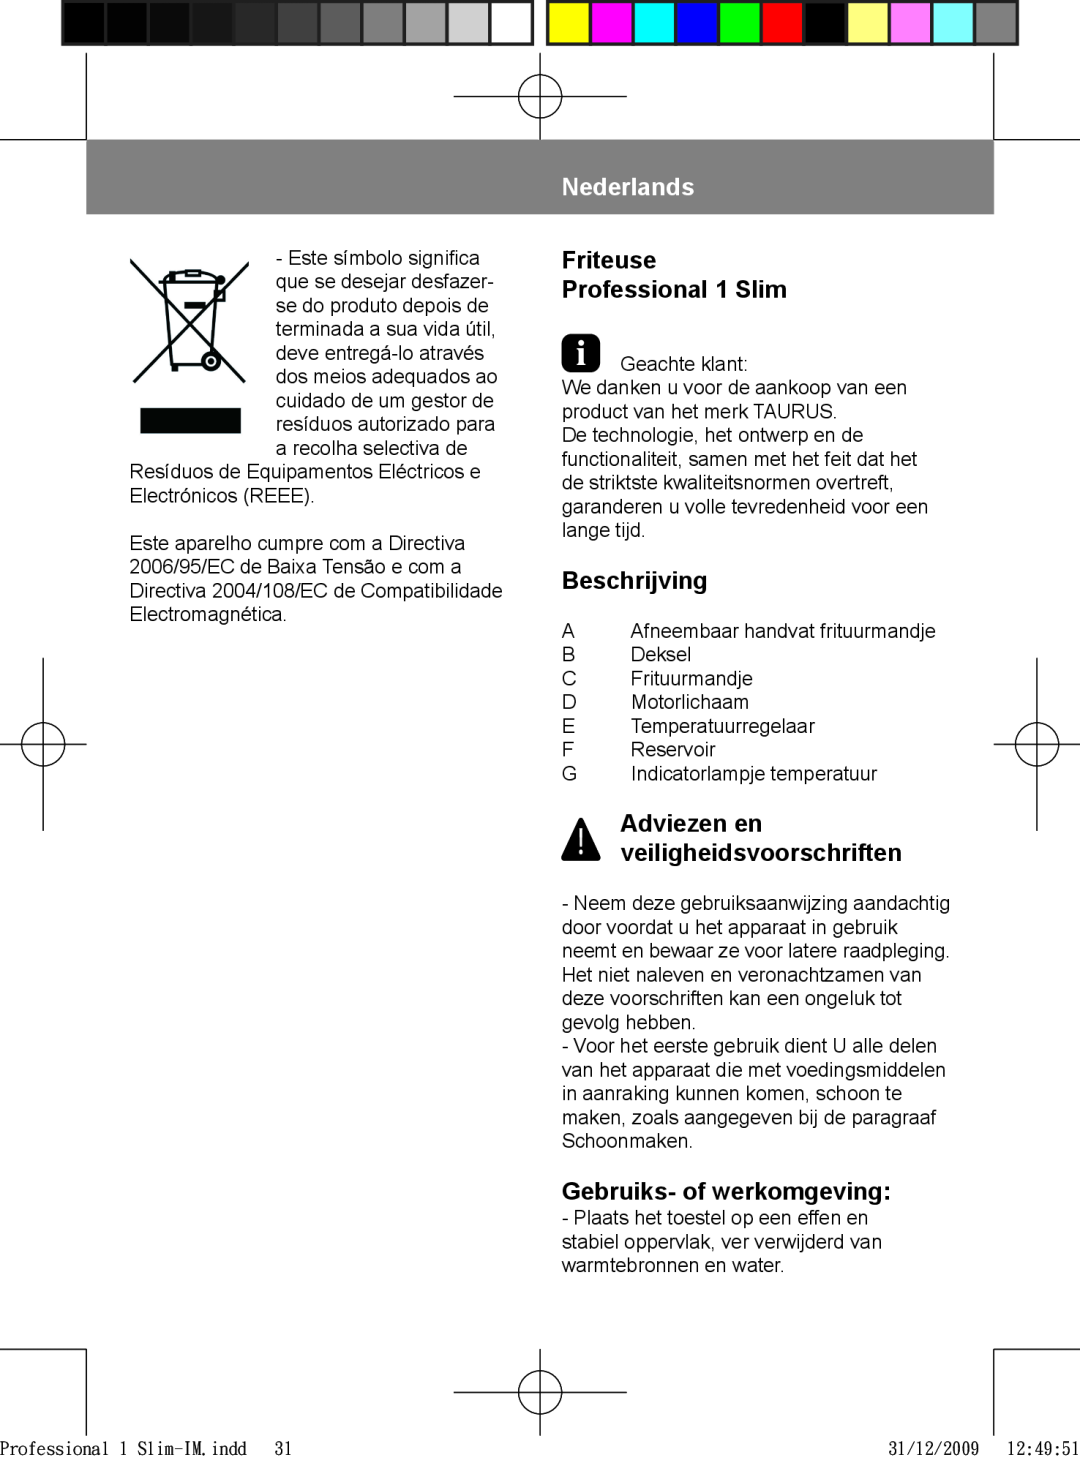 Taurus Group 1 Slim manual Nederlands, Beschrijving, Gebruiks- of werkomgeving, Adviezen en veiligheidsvoorschriften 